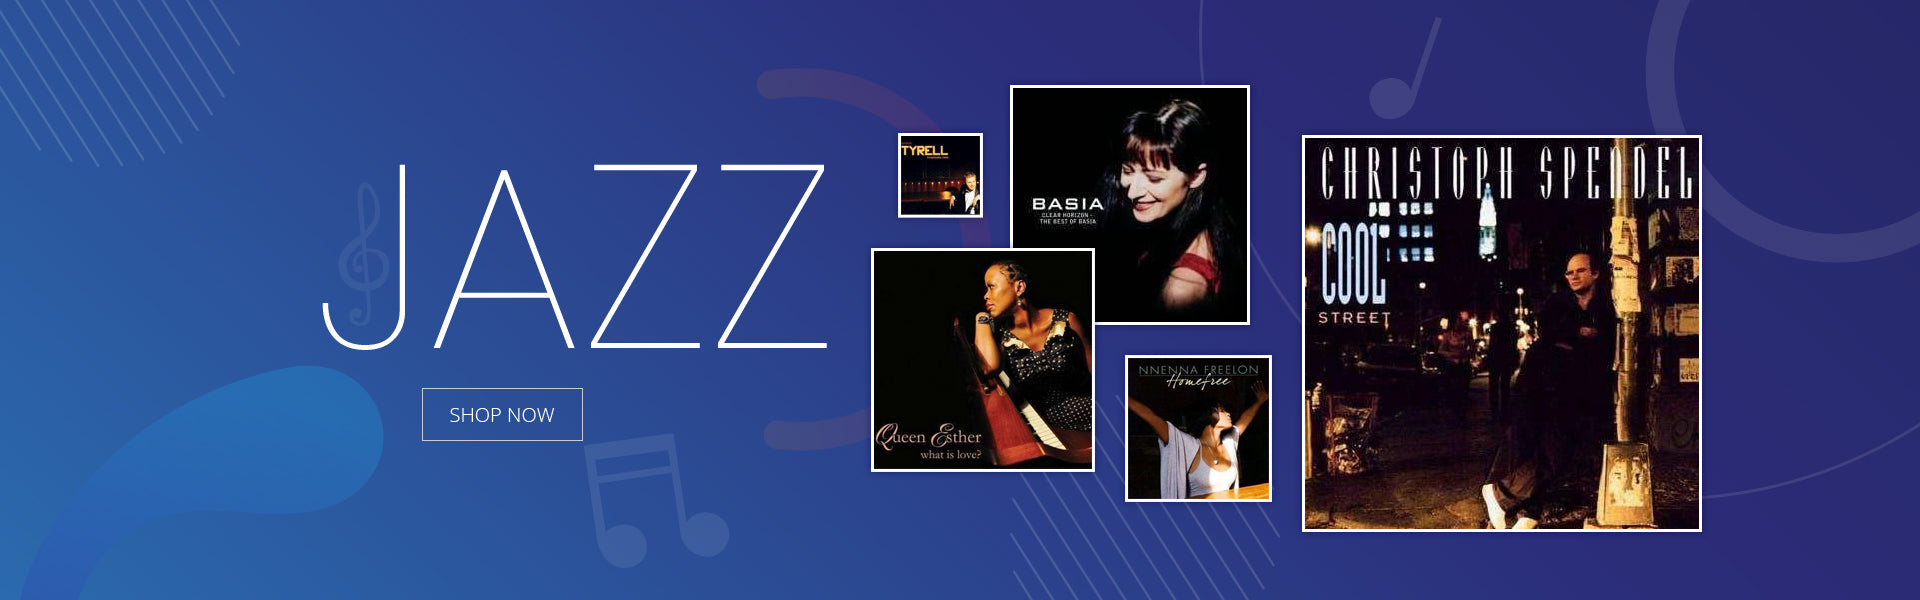 Jazz-CDs